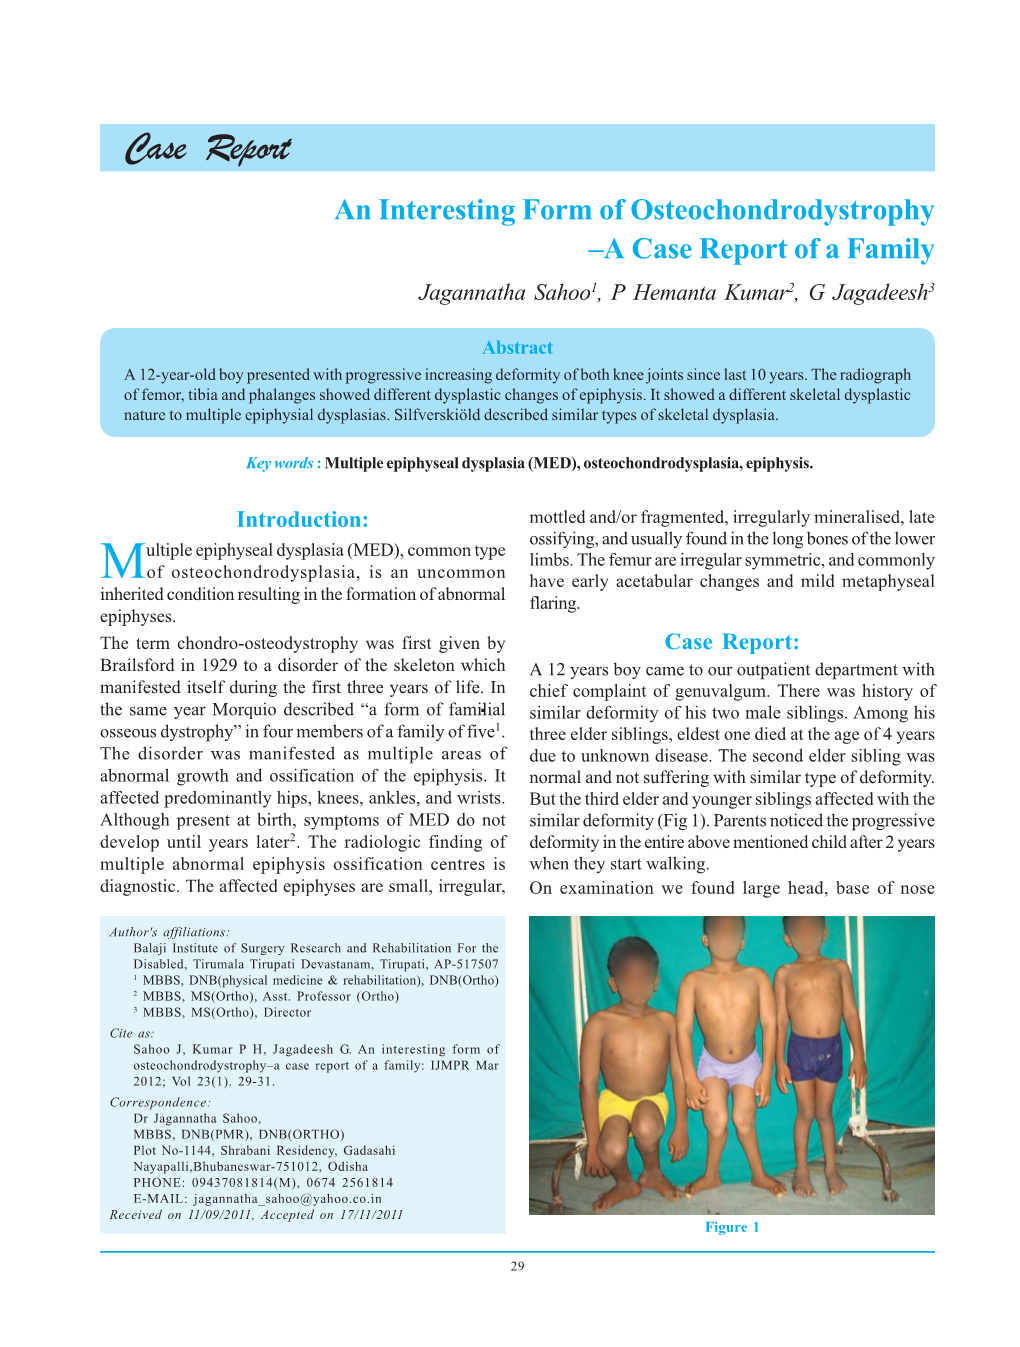 Case Report an Interesting Form of Osteochondrodystrophy –A Case Report of a Family Jagannatha Sahoo1, P Hemanta Kumar2, G Jagadeesh3